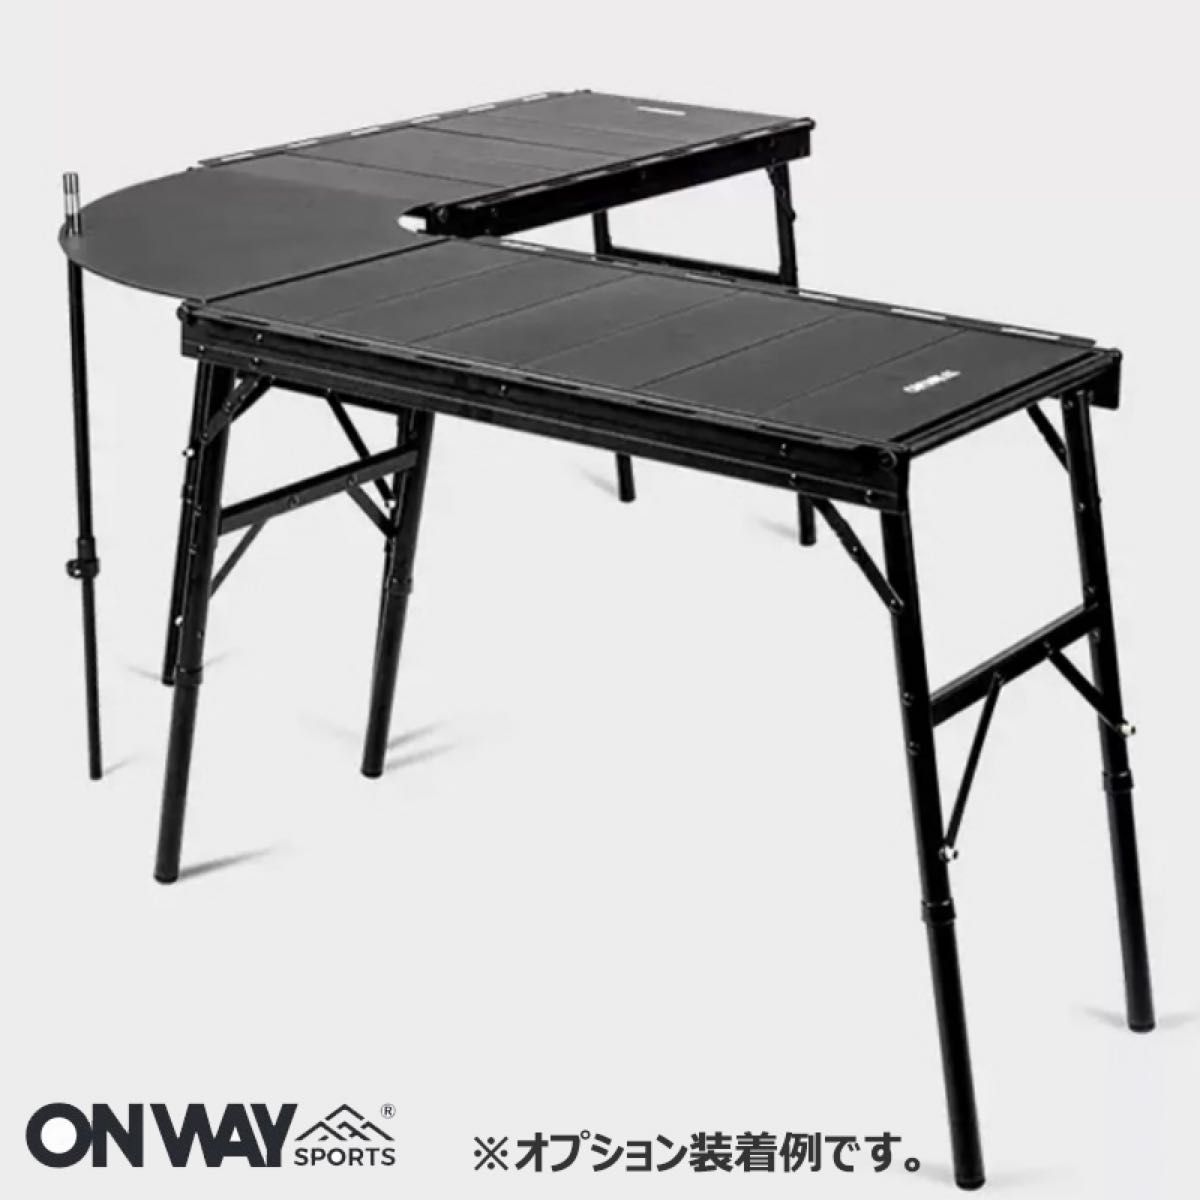 NEW IGTテーブル アルミIGTローテーブル フラットバーナーテーブル 収納ケース付 OW-8044 6ユニットパネルテーブル